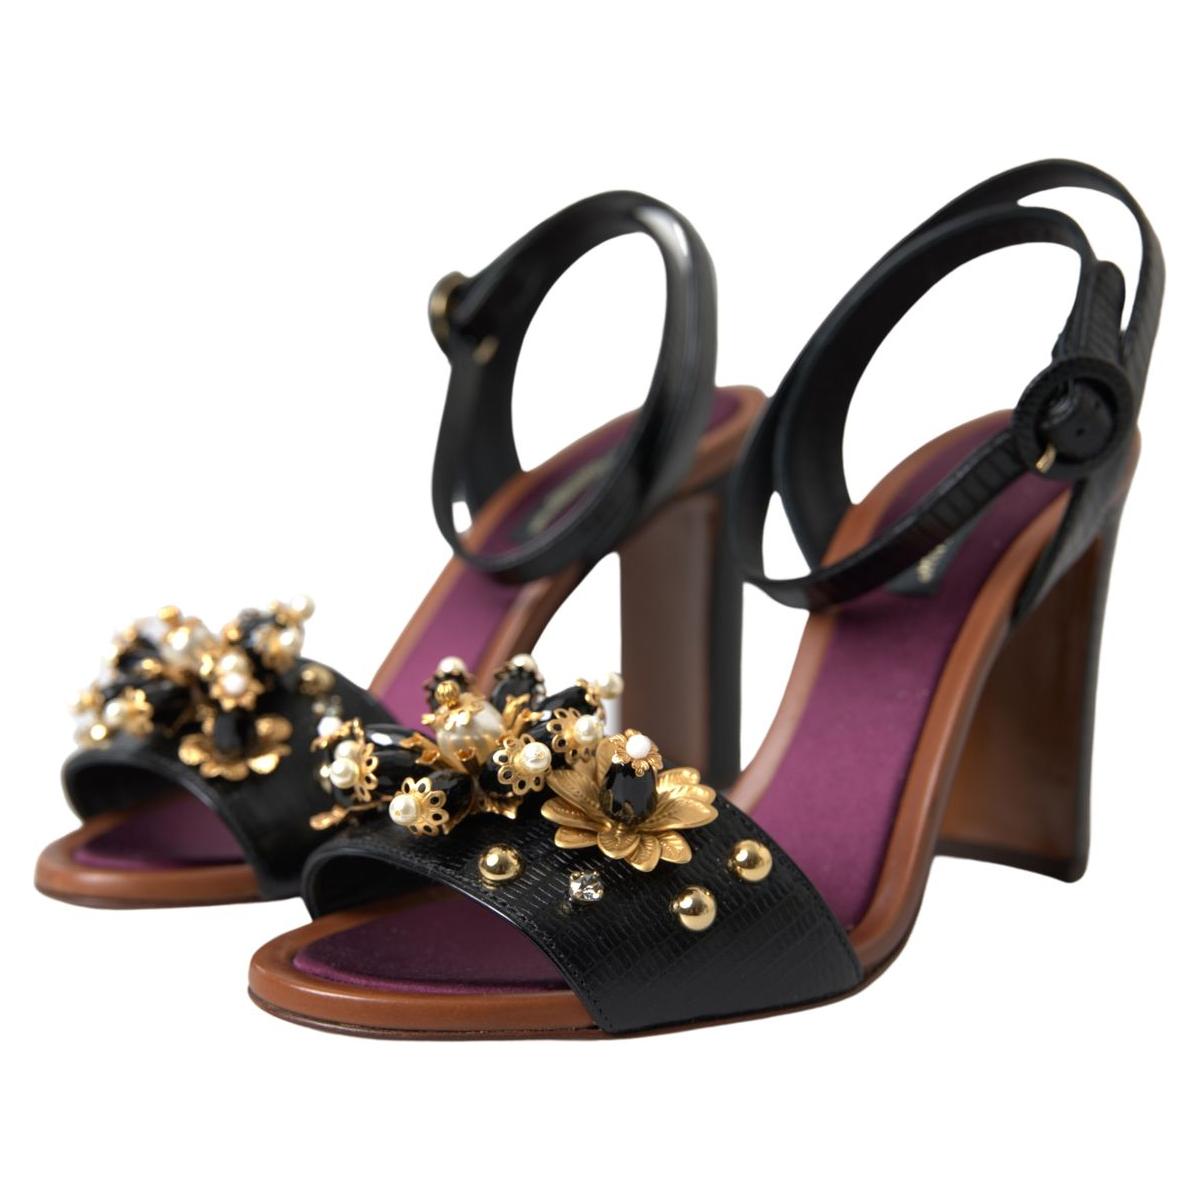 Dolce & Gabbana Elegant Embellished Leather Sandals black-lizard-embossed-floral-pearls-sandals-shoes